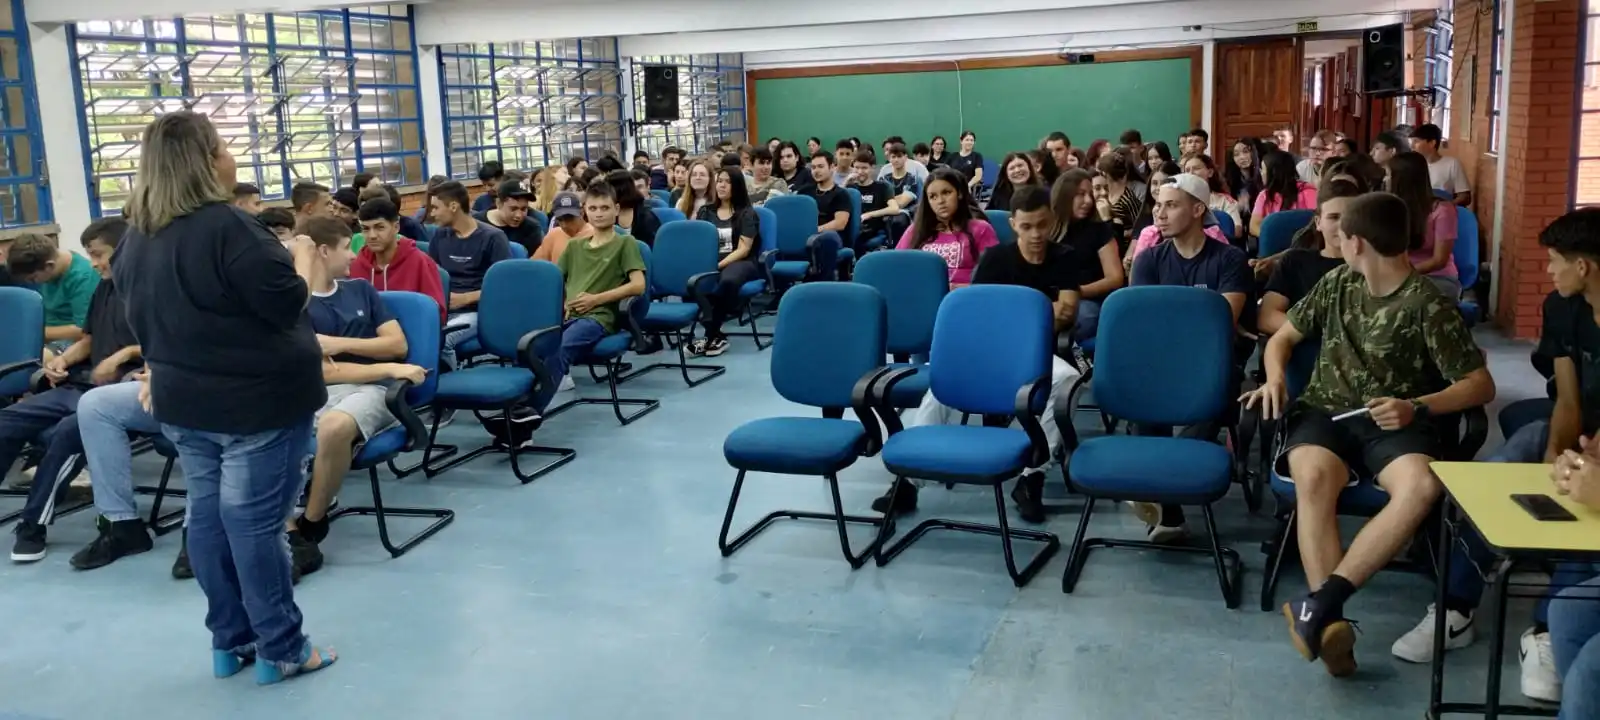 SEG de São Luiz Gonzaga promove visitas para divulgar cursos técnicos em escolas de ensino médio